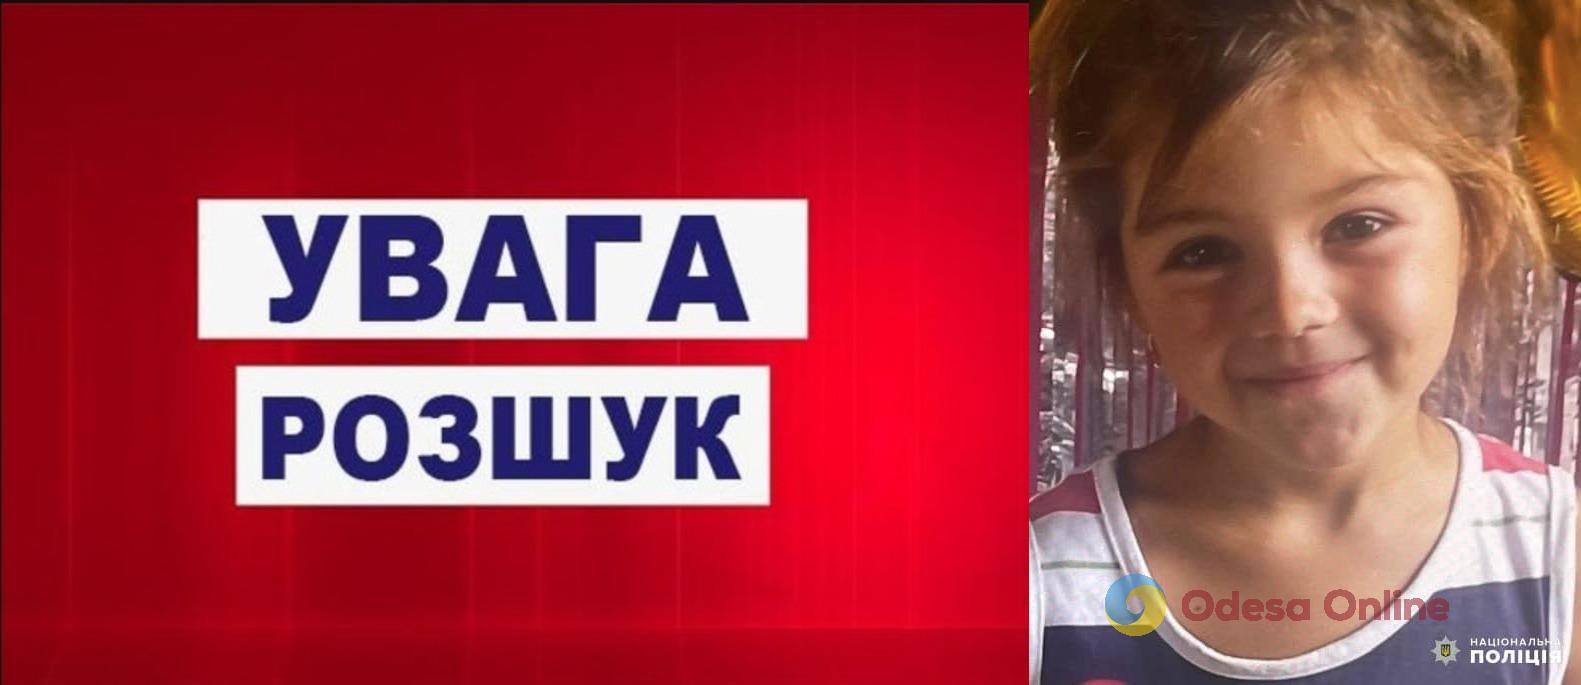 Пропала без вести: одесские правоохранители разыскивают 7-летнюю девочку (обновлено)